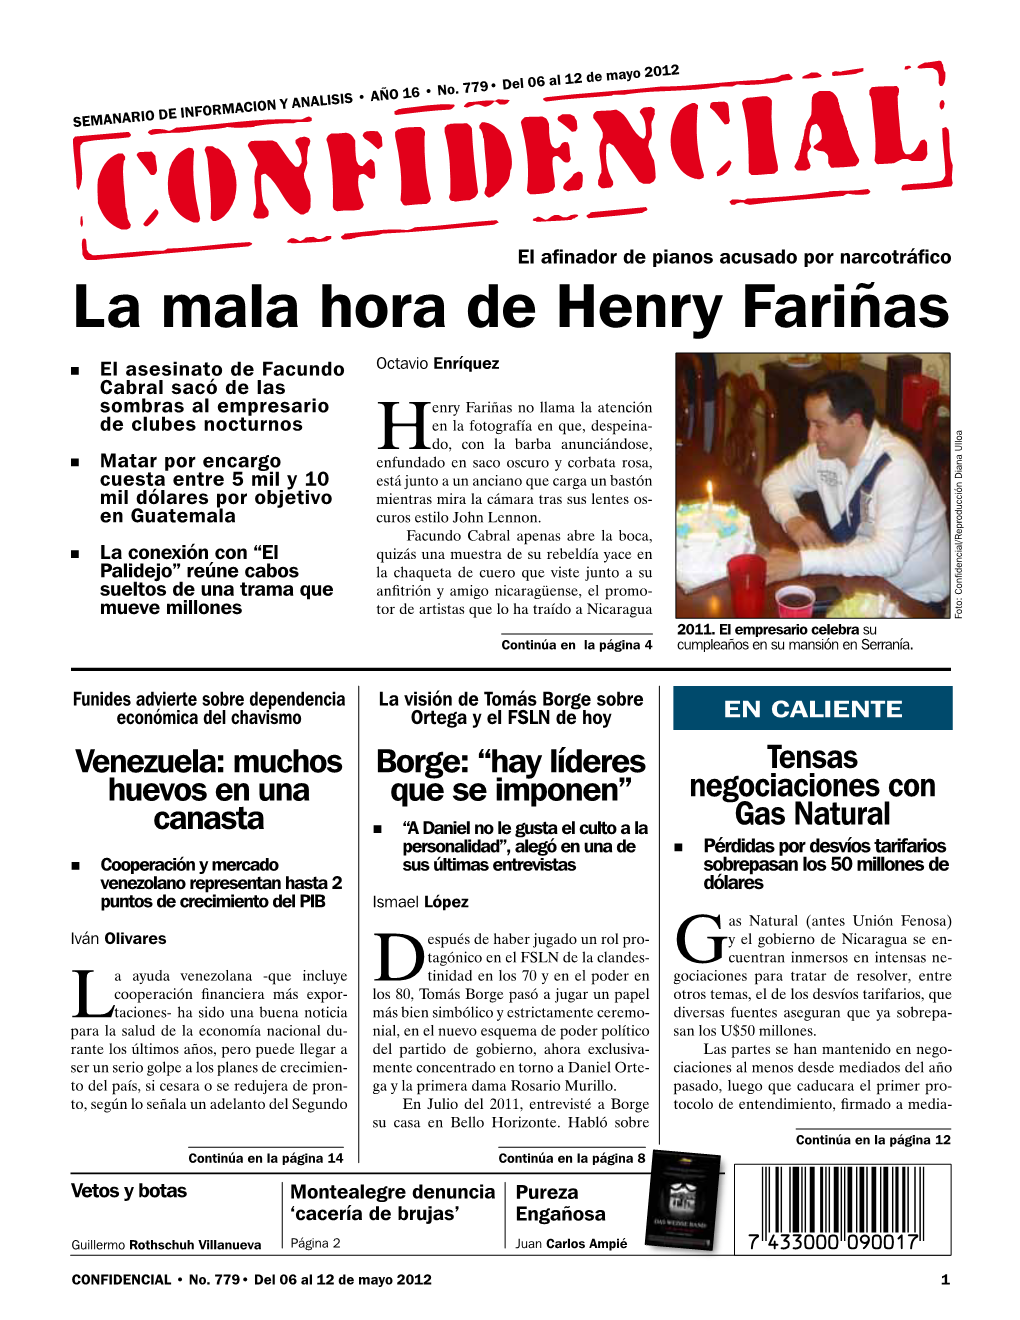 La Mala Hora De Henry Fariñas